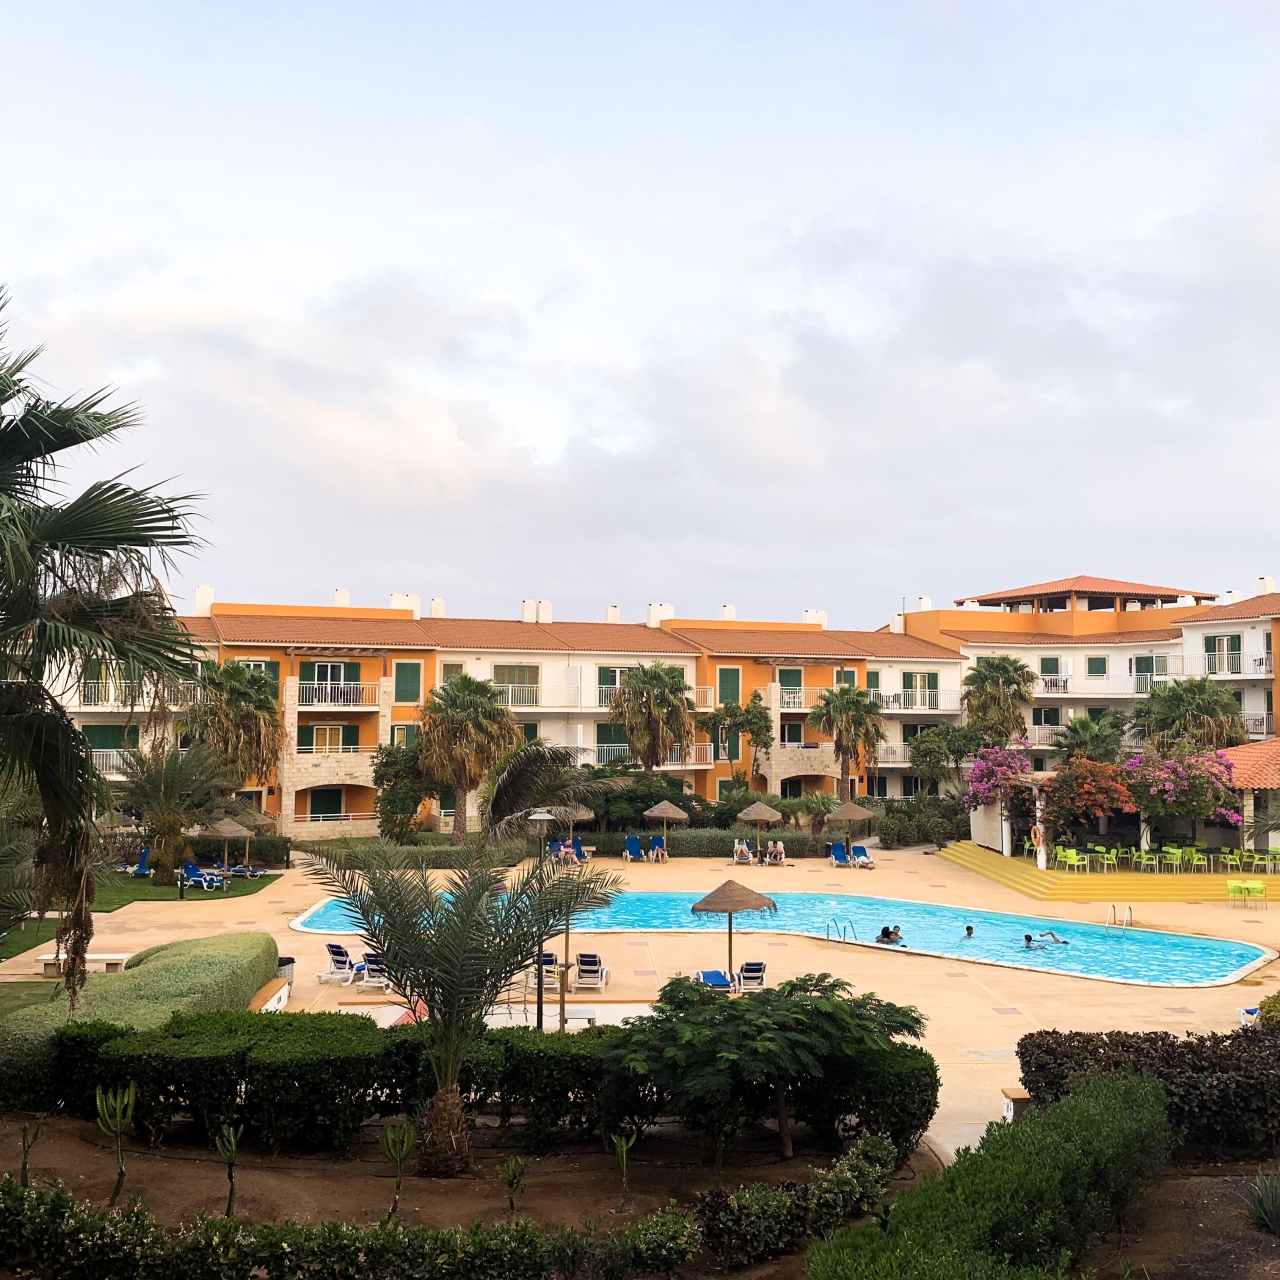 Aguahotels Sal Vila Verde Resort - 4 HRS star hotel in Prainha